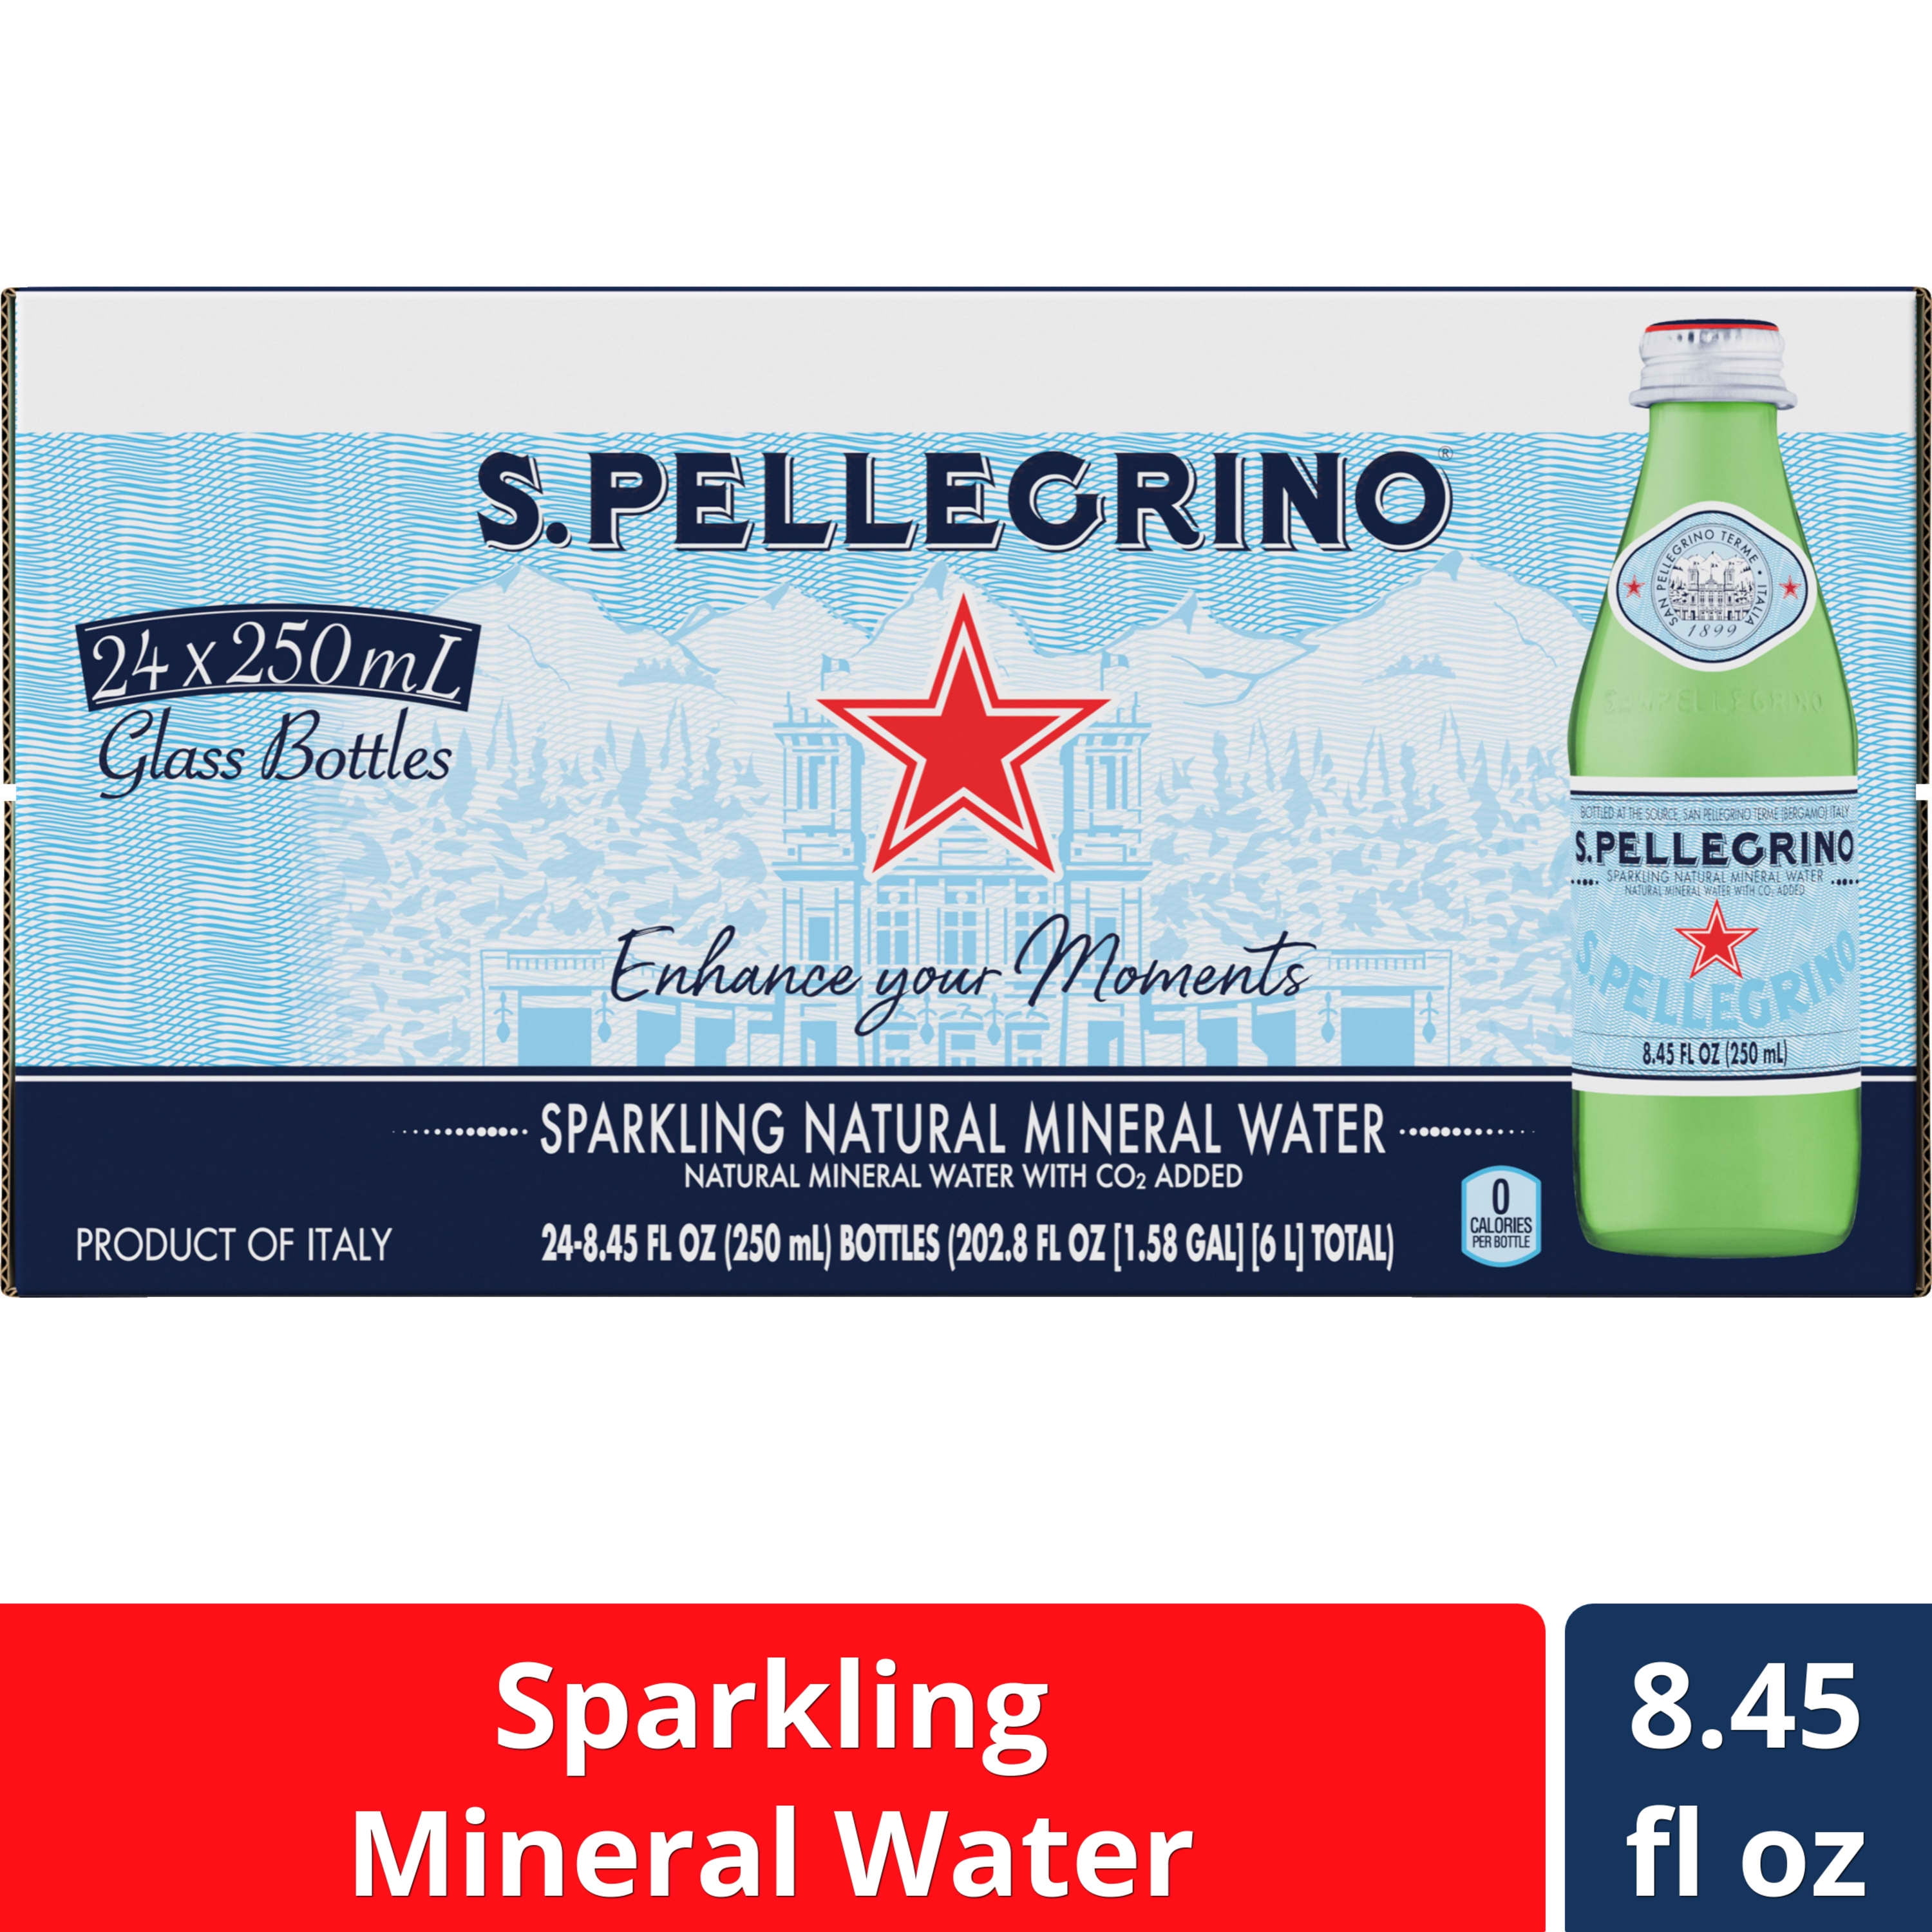 Bulk San Pellegrino Sparkling Water, 1L Glass Bottle (12 Pack